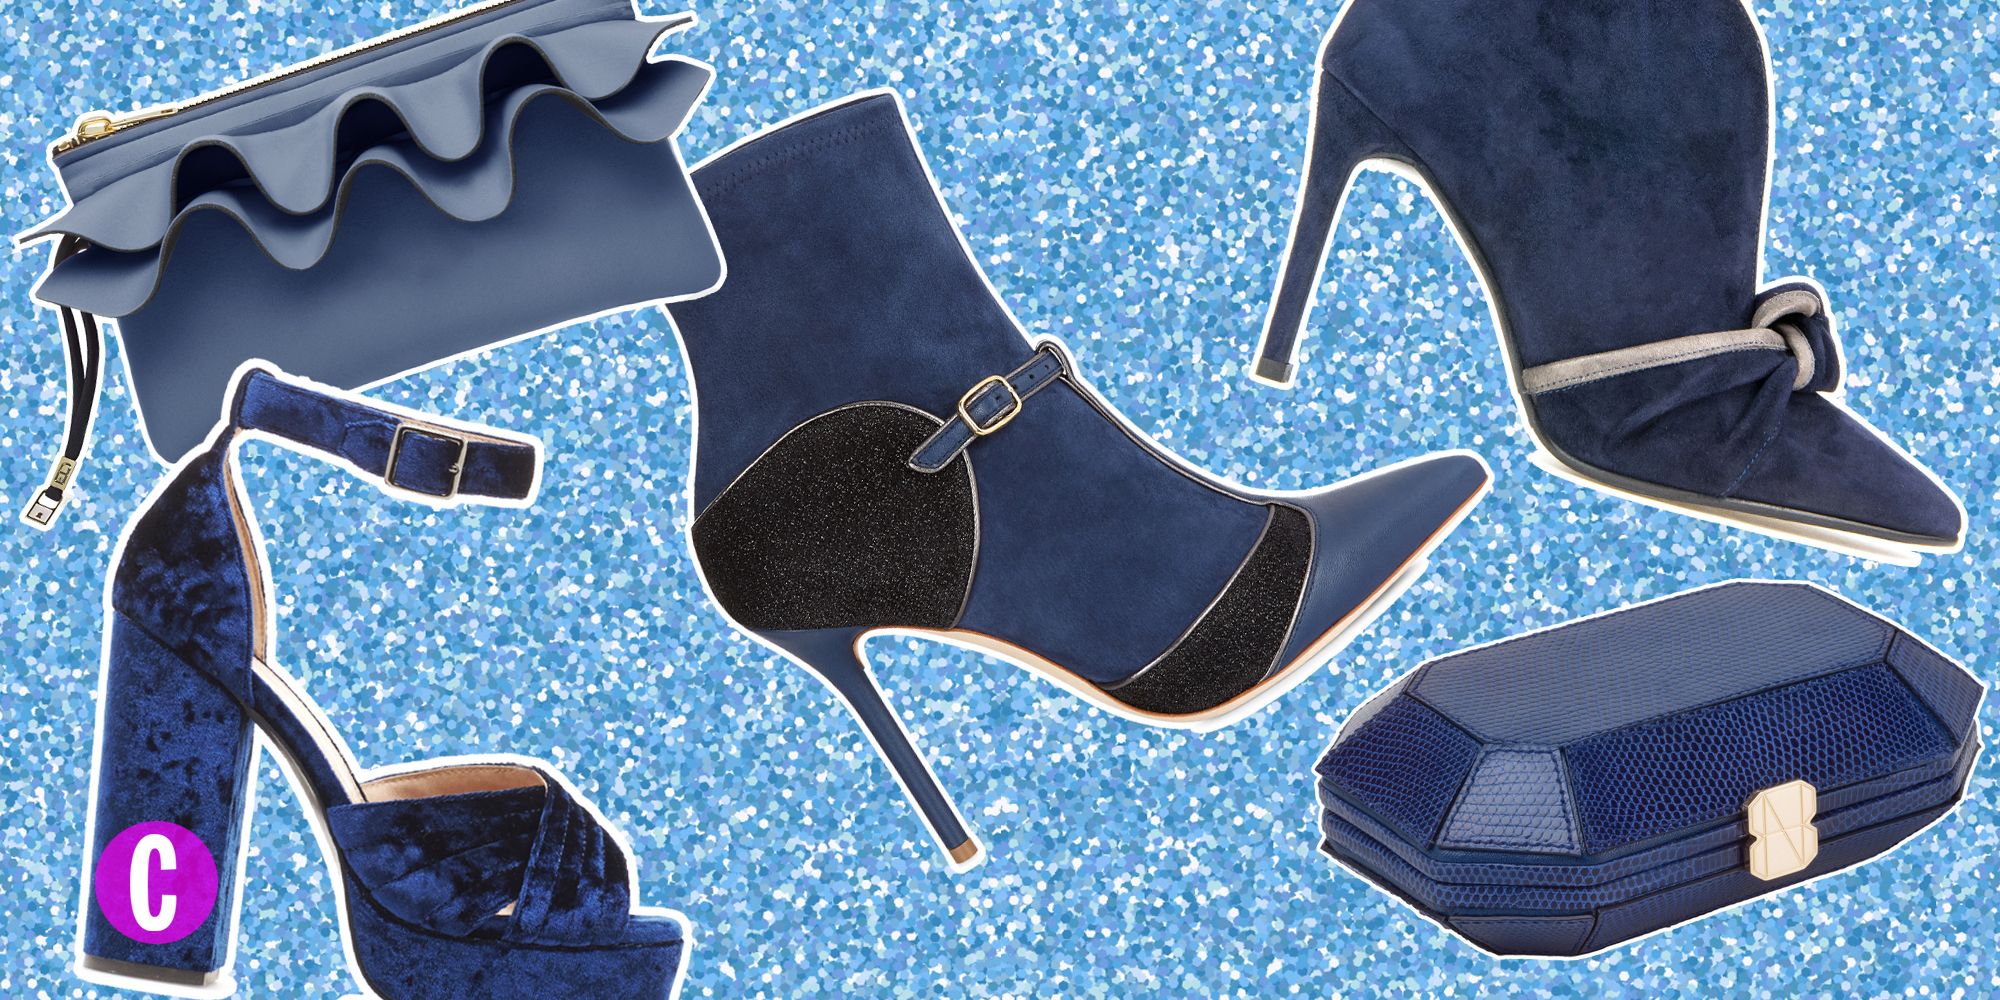 Le scarpe e le borse blu sono gli accessori moda per i tuoi look